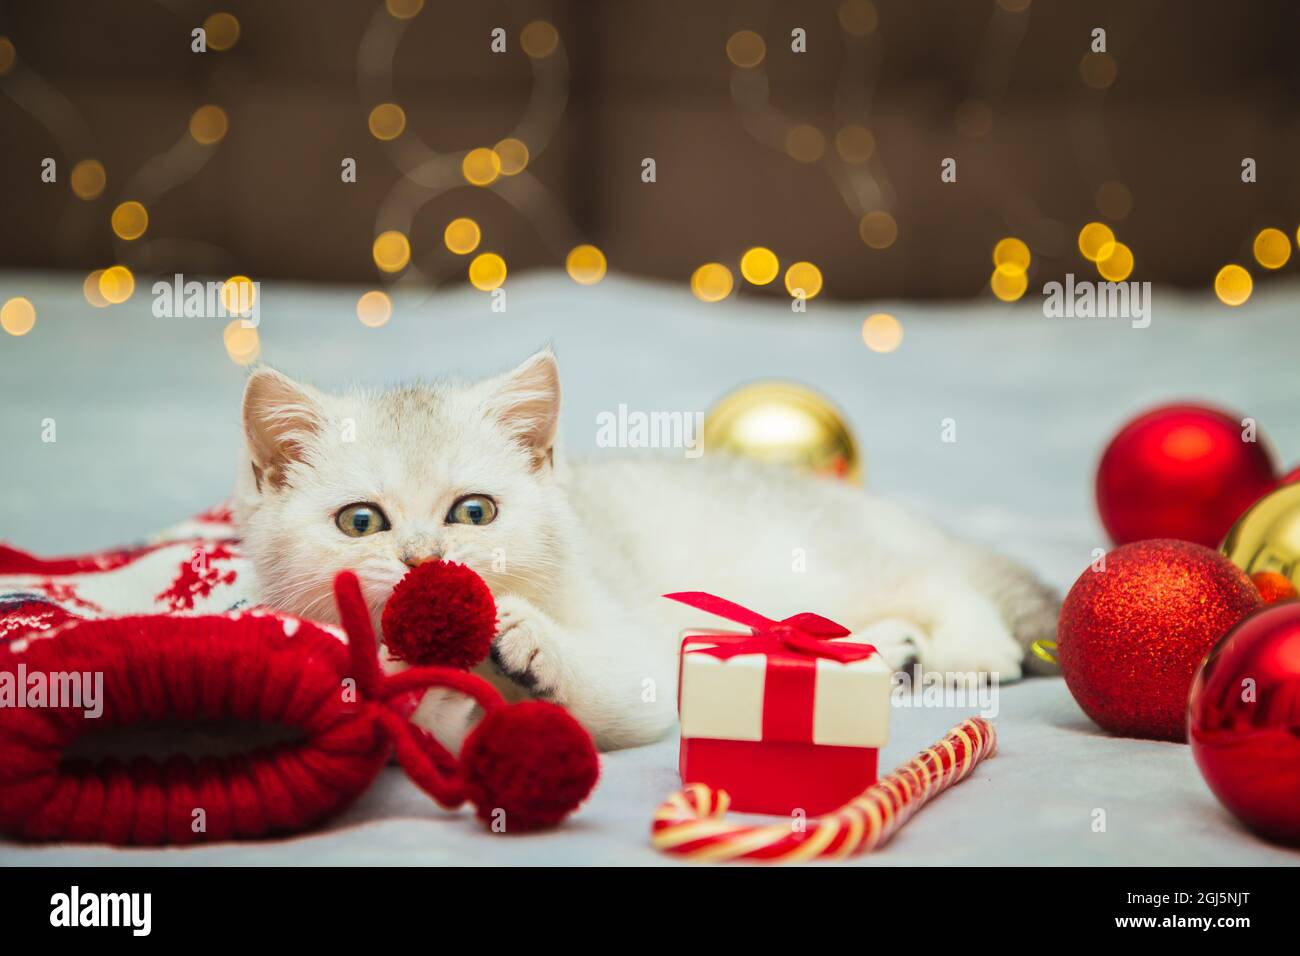 Weißes britisches Kätzchen spielt auf einer Decke mit weihnachtlichen Accessoires - Lollipop, Socken, Geschenke, Weihnachtskugeln. Festliche Stimmung. Warten auf das Holid Stockfoto